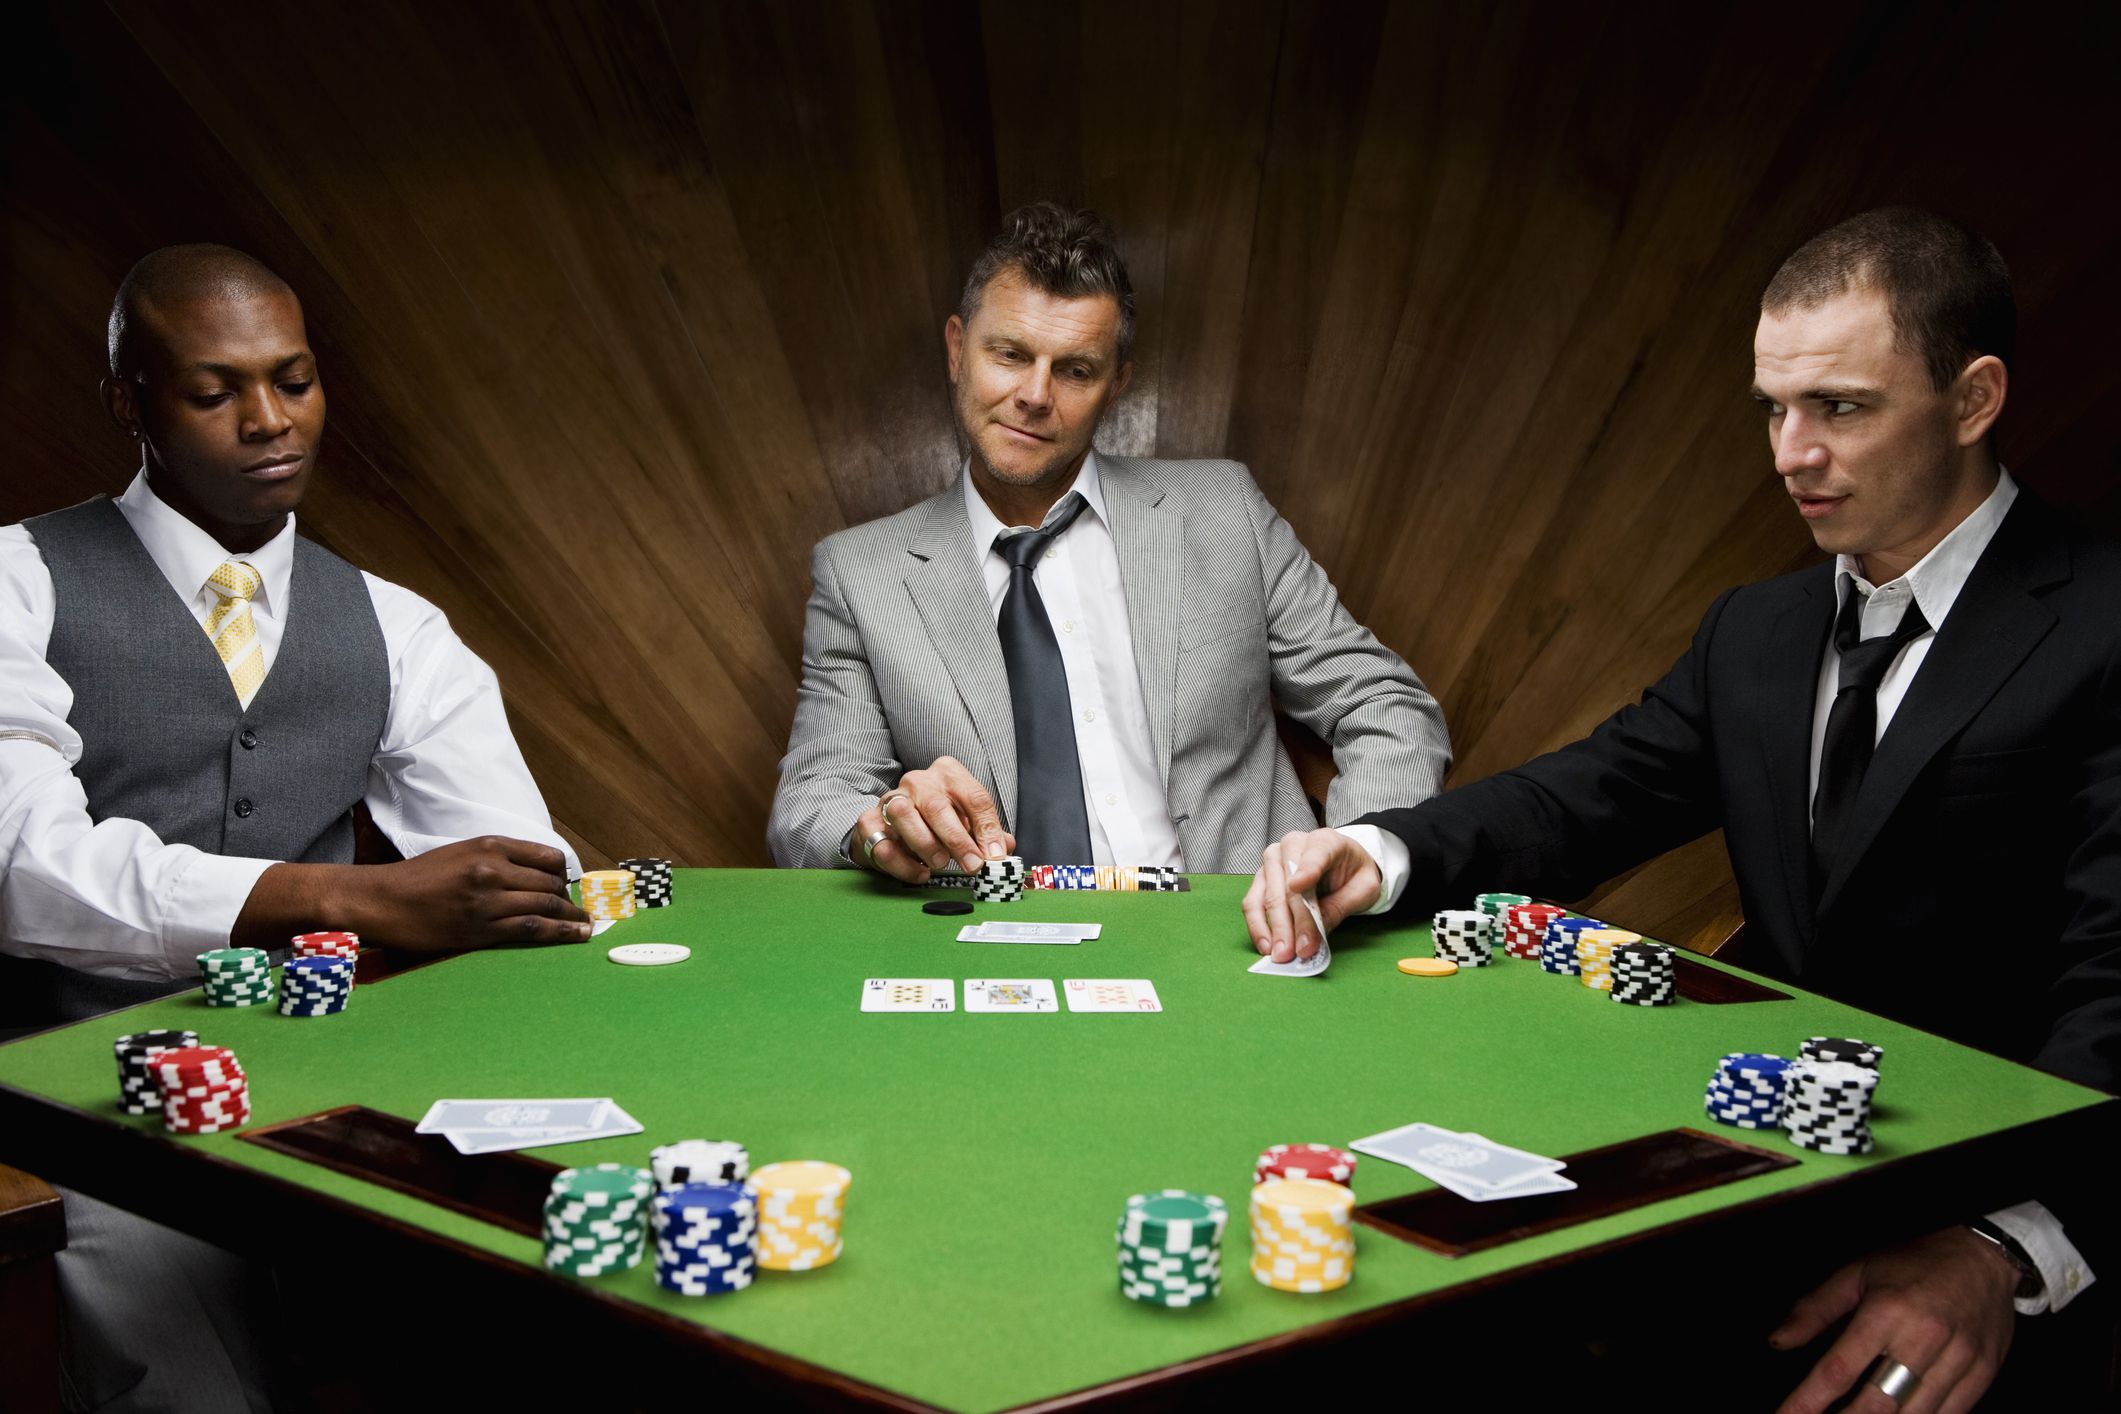 Casino card game. Покер. Игрок в Покер. Казино Покер. Игроки за покерным столом.